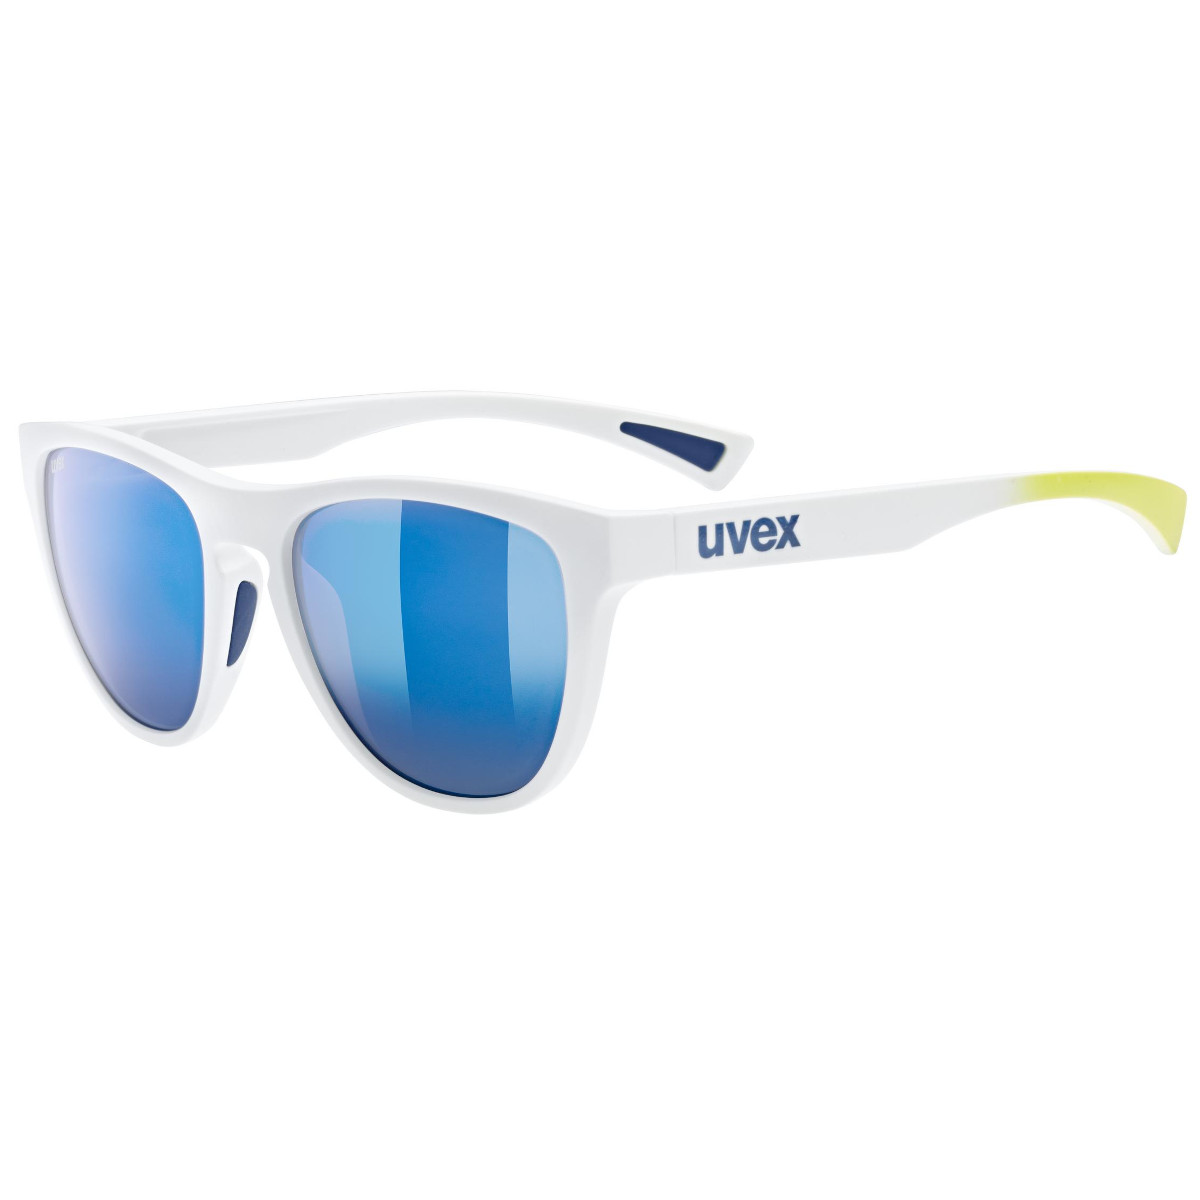 Produktbild von Uvex esntl spirit Brille - white matt/mirror blue